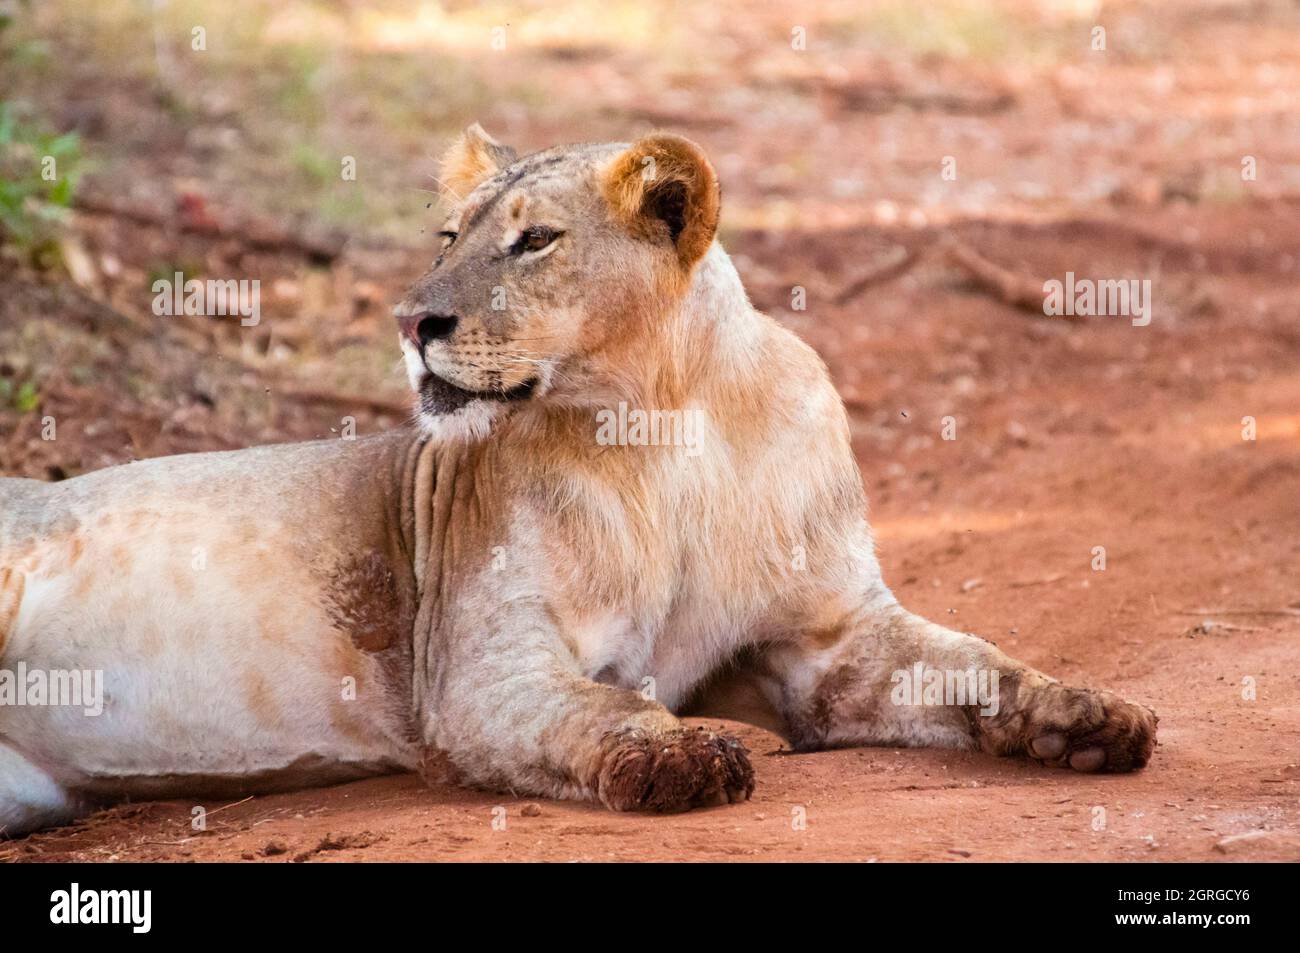 Kenya, parc national de Tsavo West, lion (Panthera leo) Banque D'Images